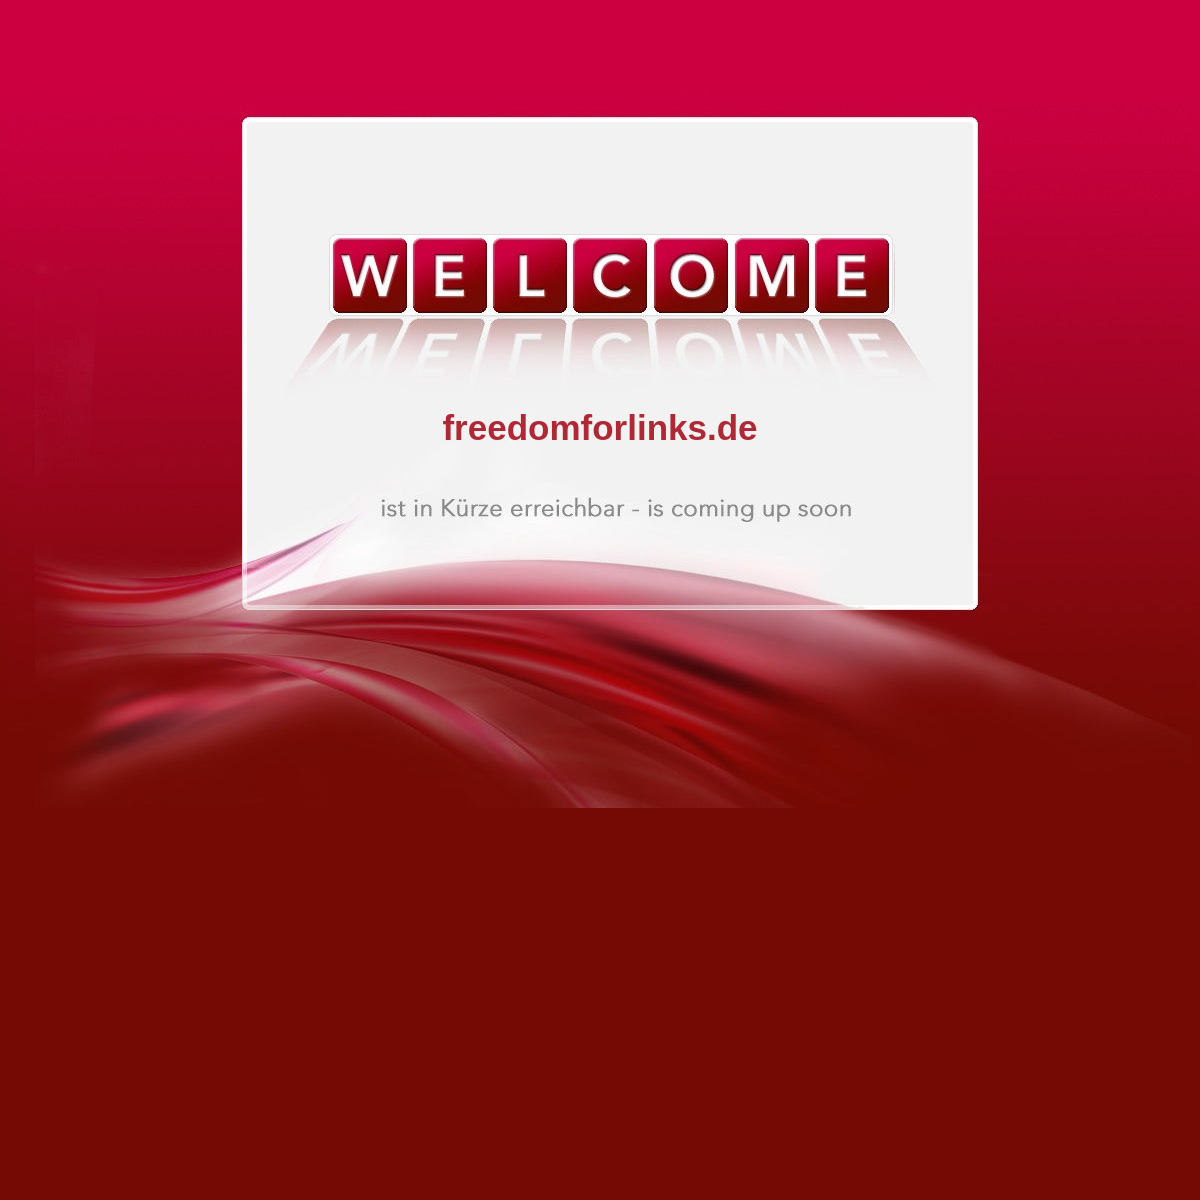 A complete backup of freedomforlinks.de